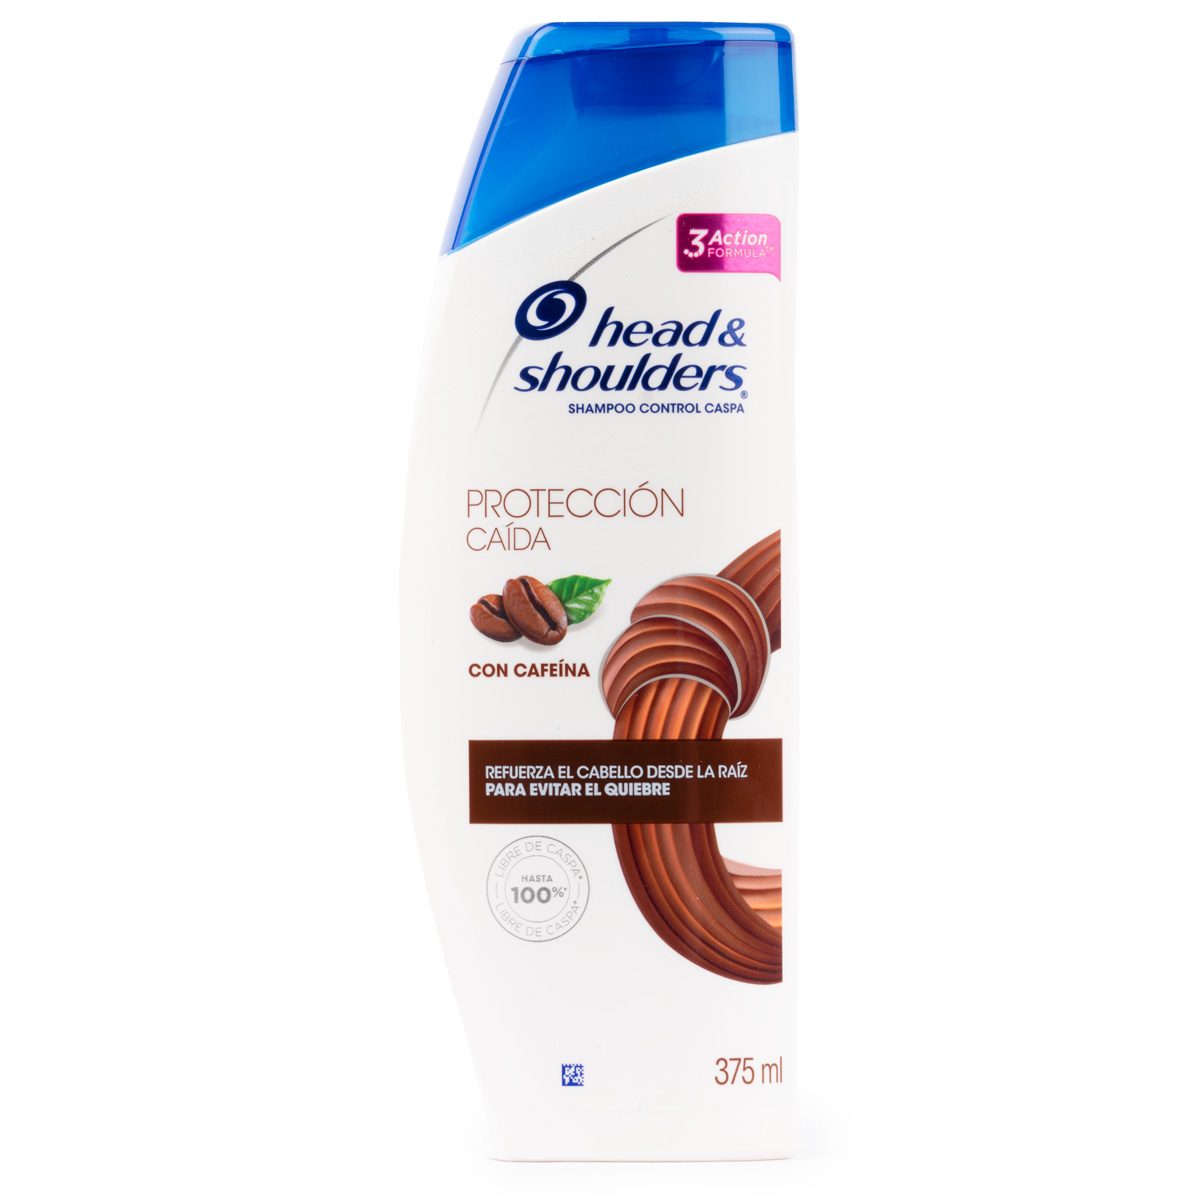 Shampoo Protección Caida Woman - Head & Shoulders